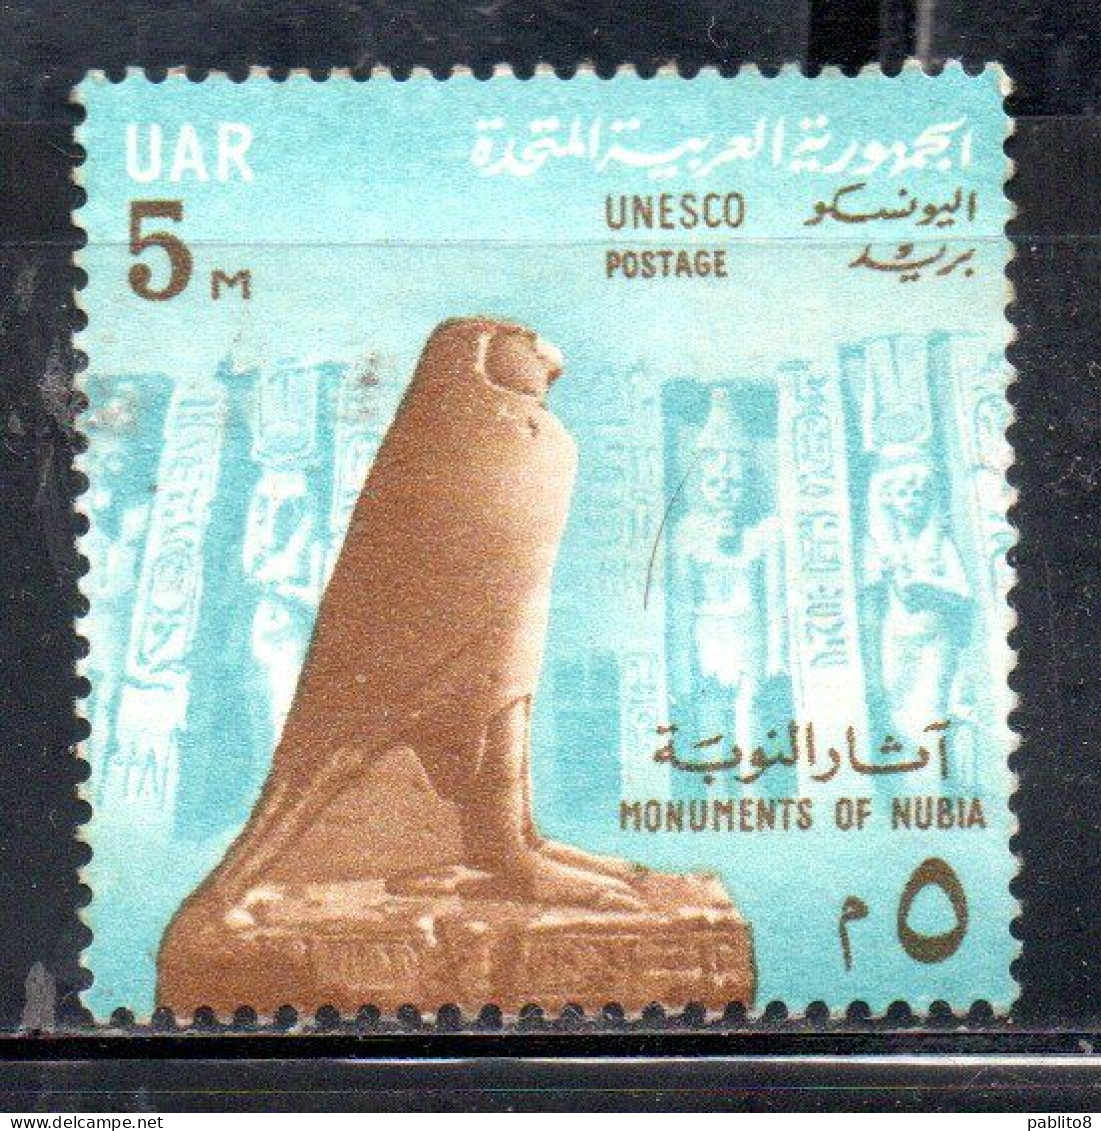 UAR EGYPT EGITTO 1964 SAVE THE MONUMENTS OF NUBIA CAMPAIGN HORUS AND FACADE OF NEFERTARI TEMPLE ABU SIMBEL 5m MH - Nuovi